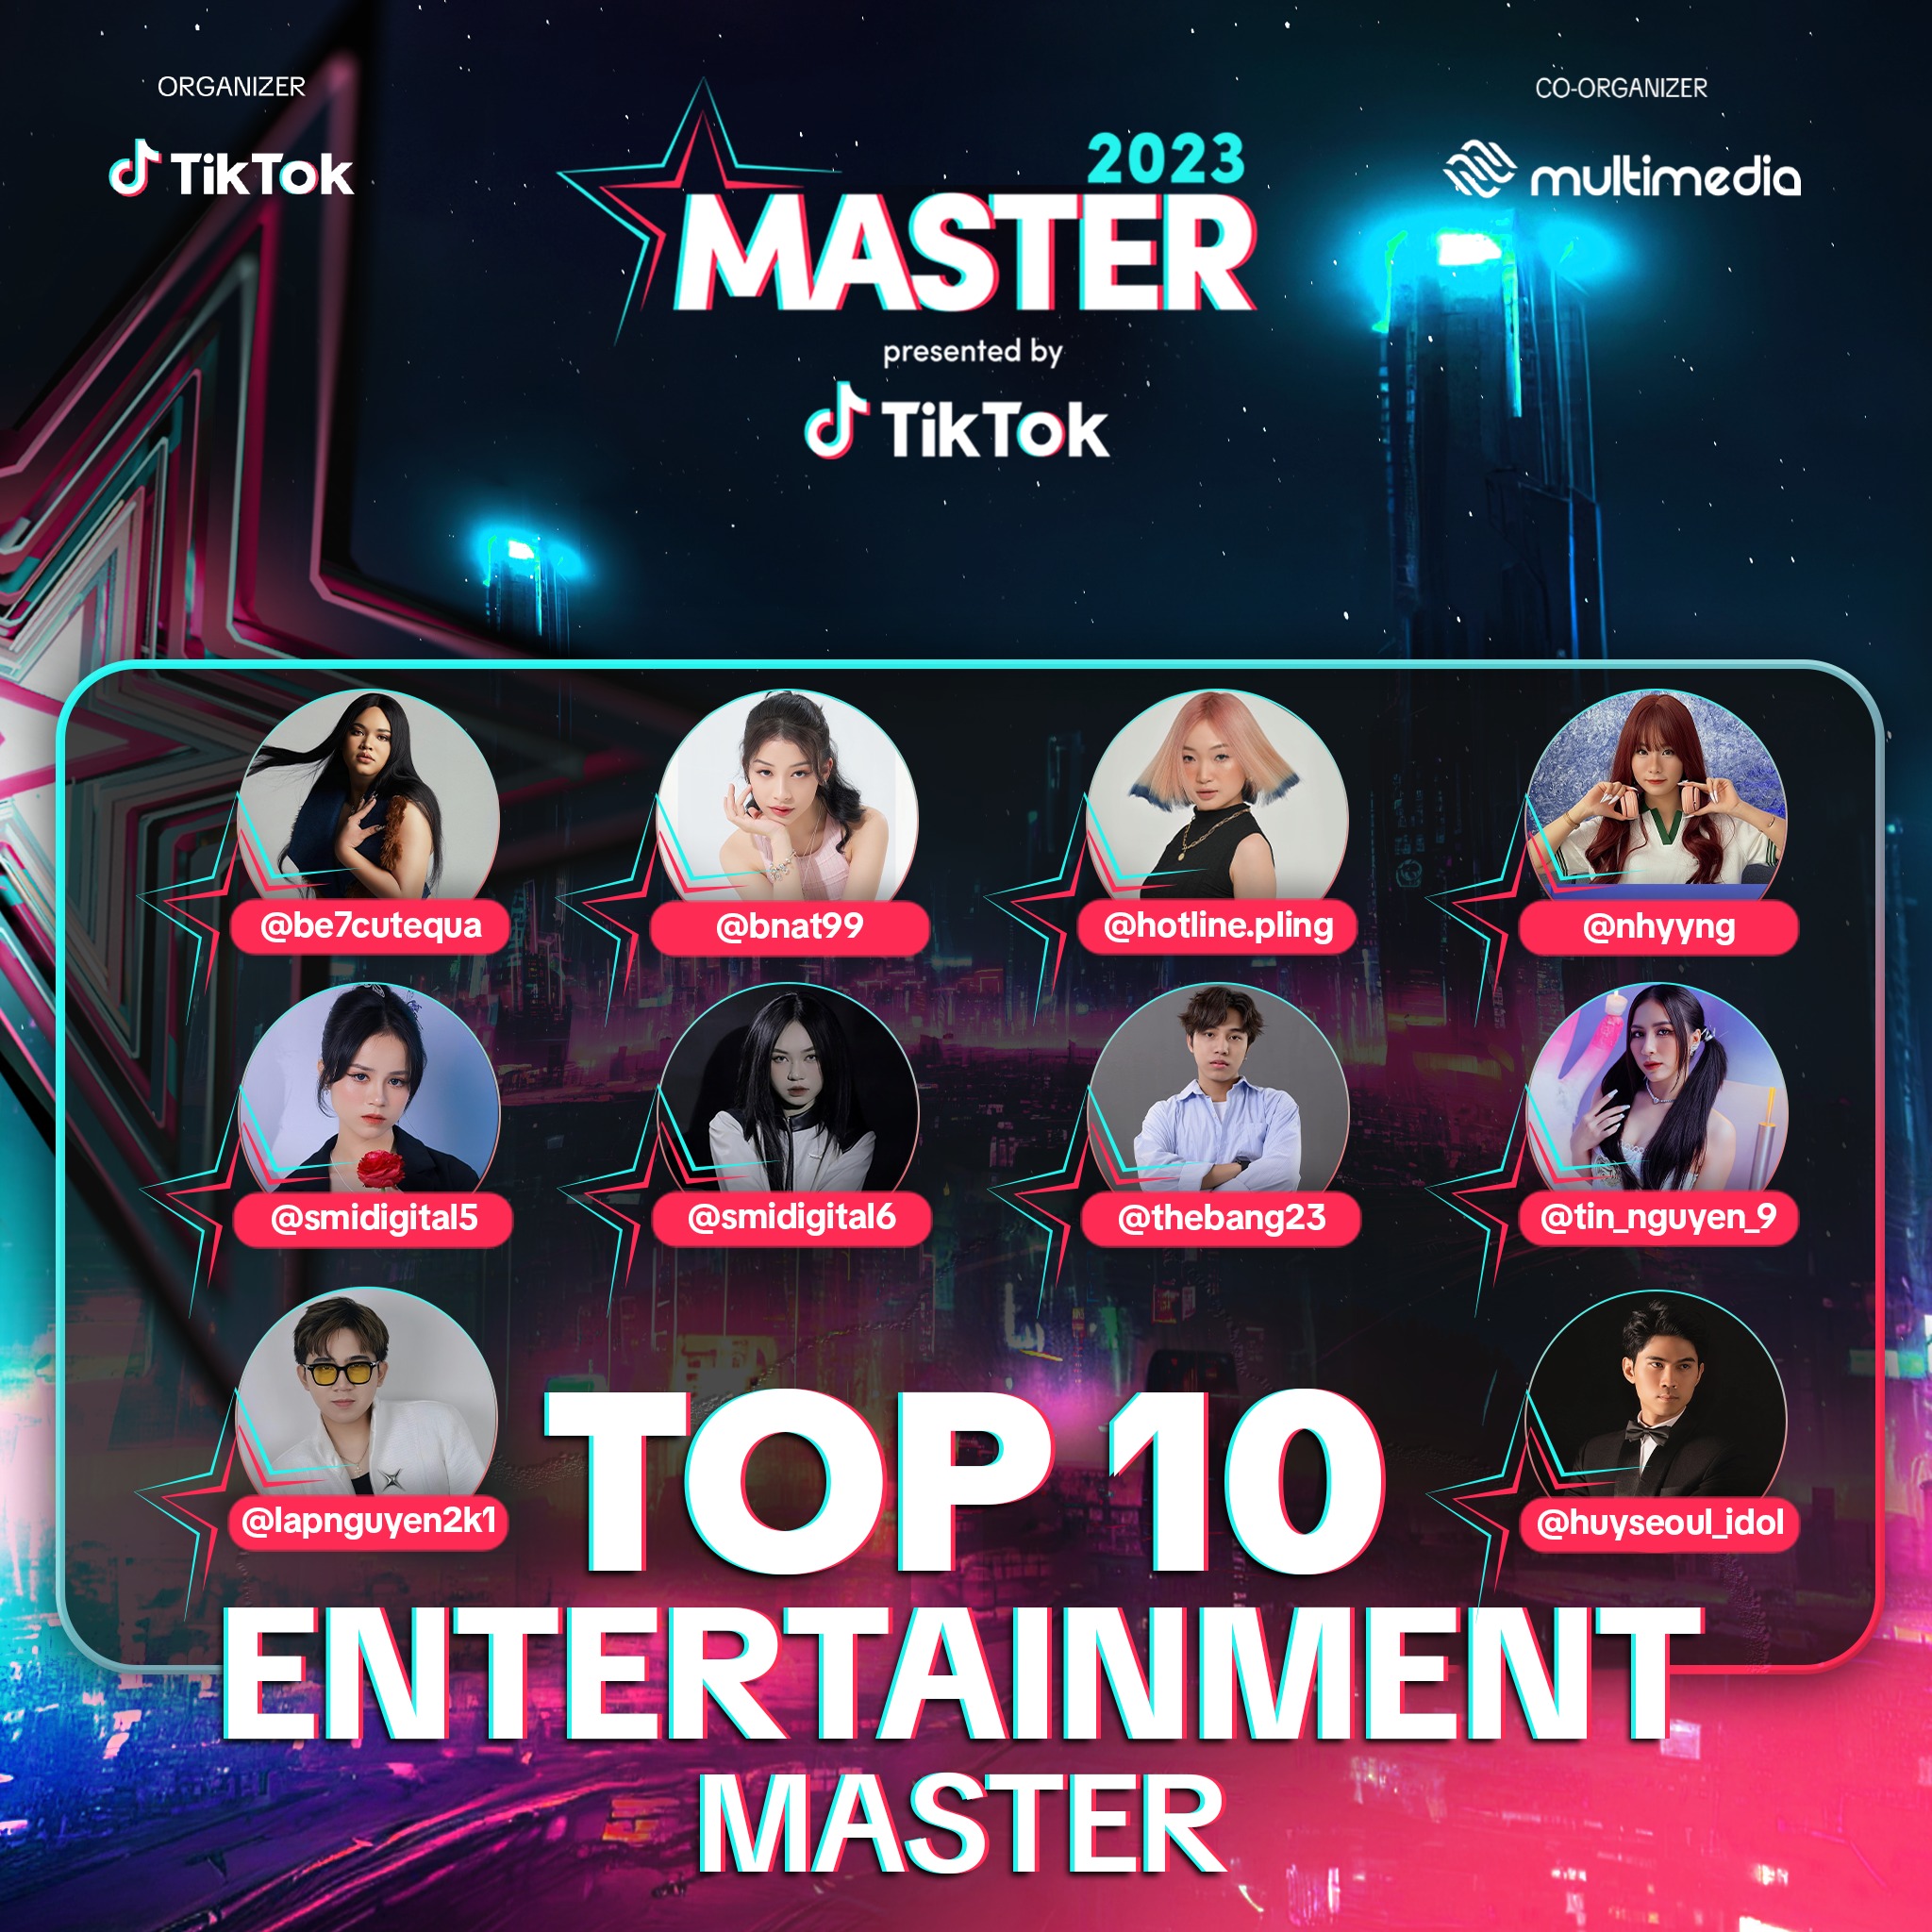 2. Top 30 nhà sáng tạo nội dung xuất sắc ở hạng mục Entertainment Master đã chính thức được công bố